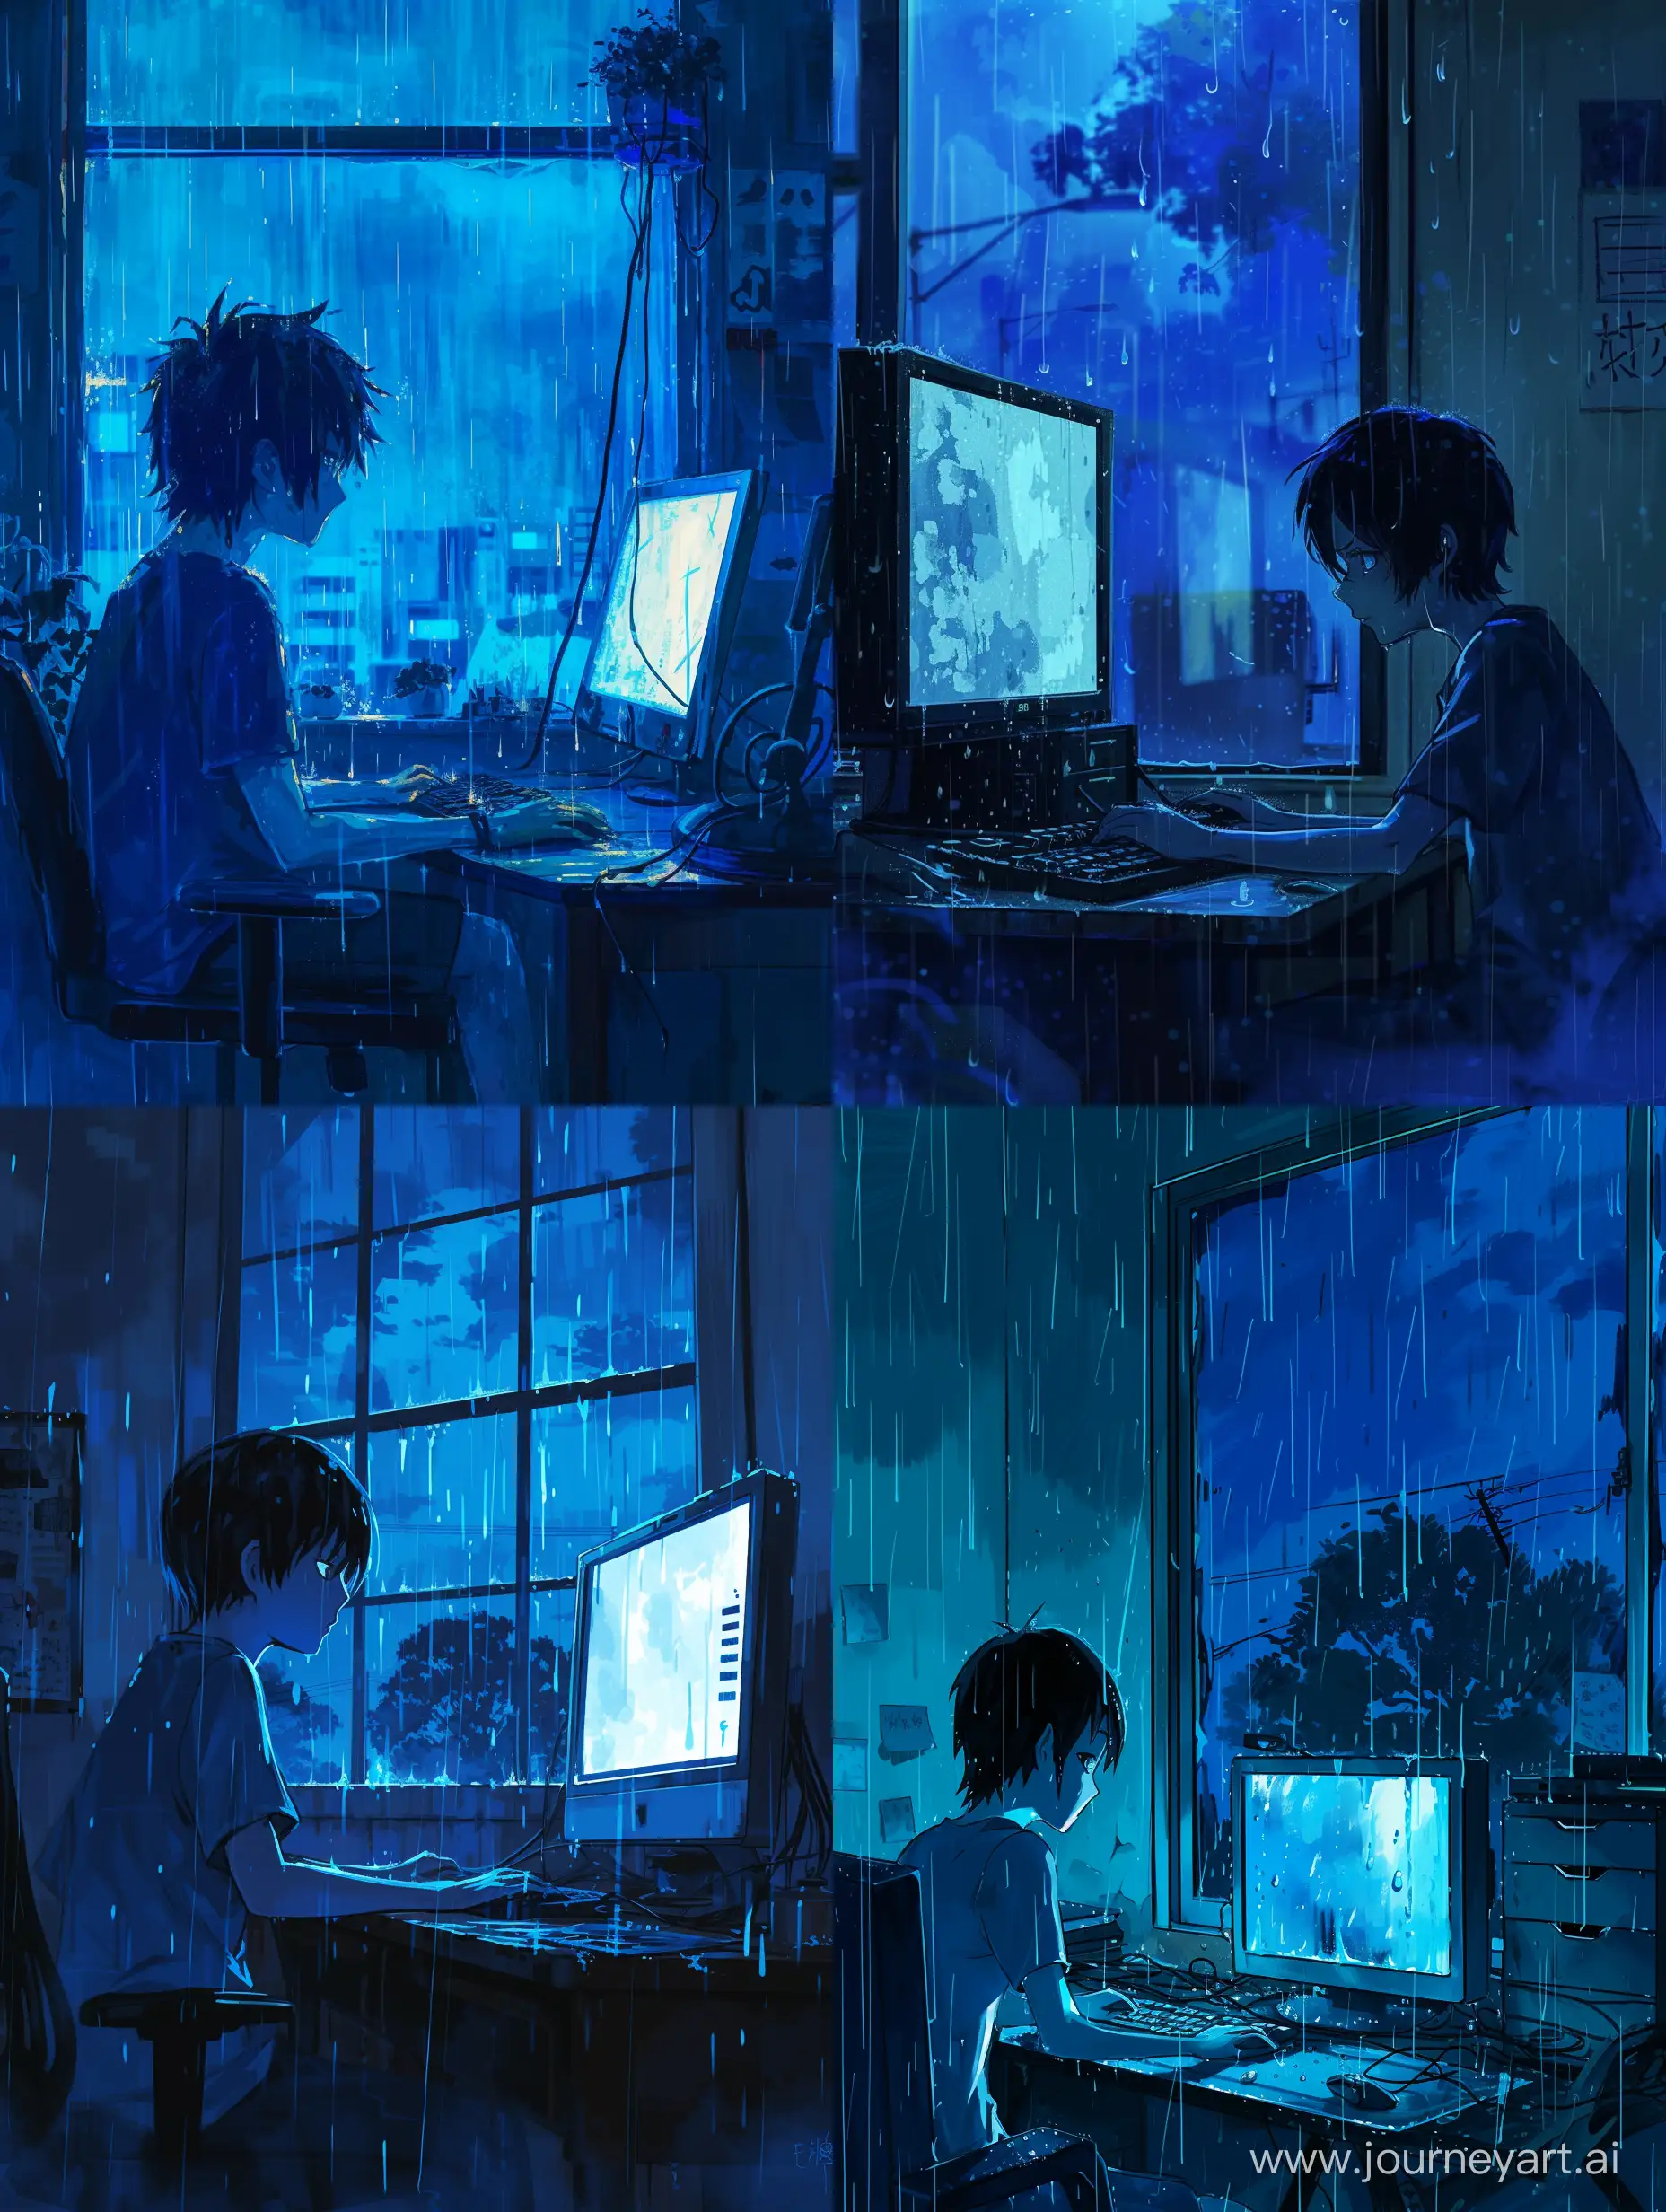 Melancholic-16YearOld-Boy-Immersed-in-Virtual-Despair-Amidst-Rainy-Atmosphere